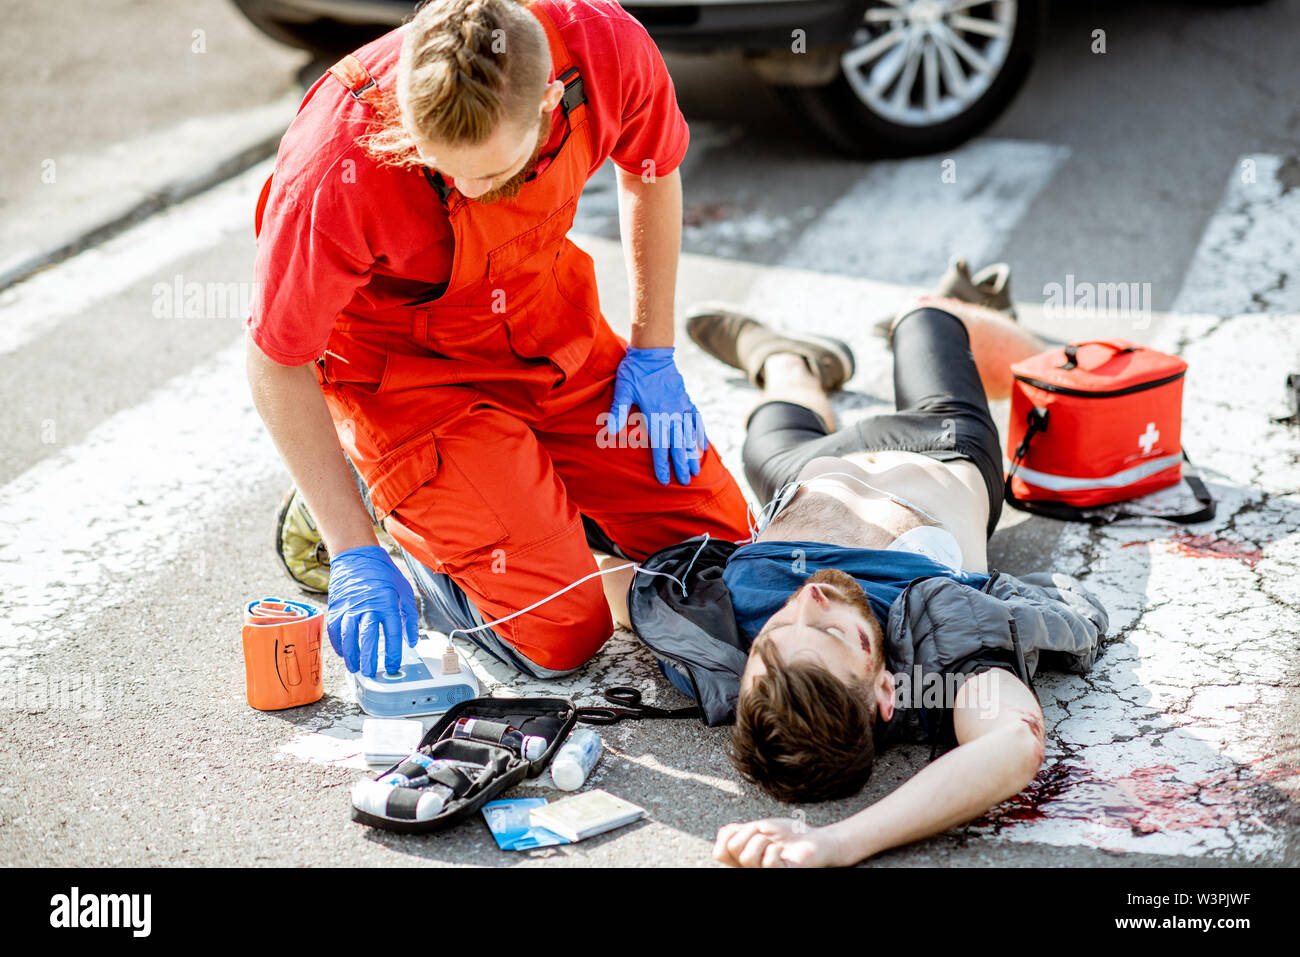 Trabajador Ambluence aplicando cuidados de emergencia con desfibrilador para el sangrado lesionado hombre tumbado en el cruce peatonal Foto de stock